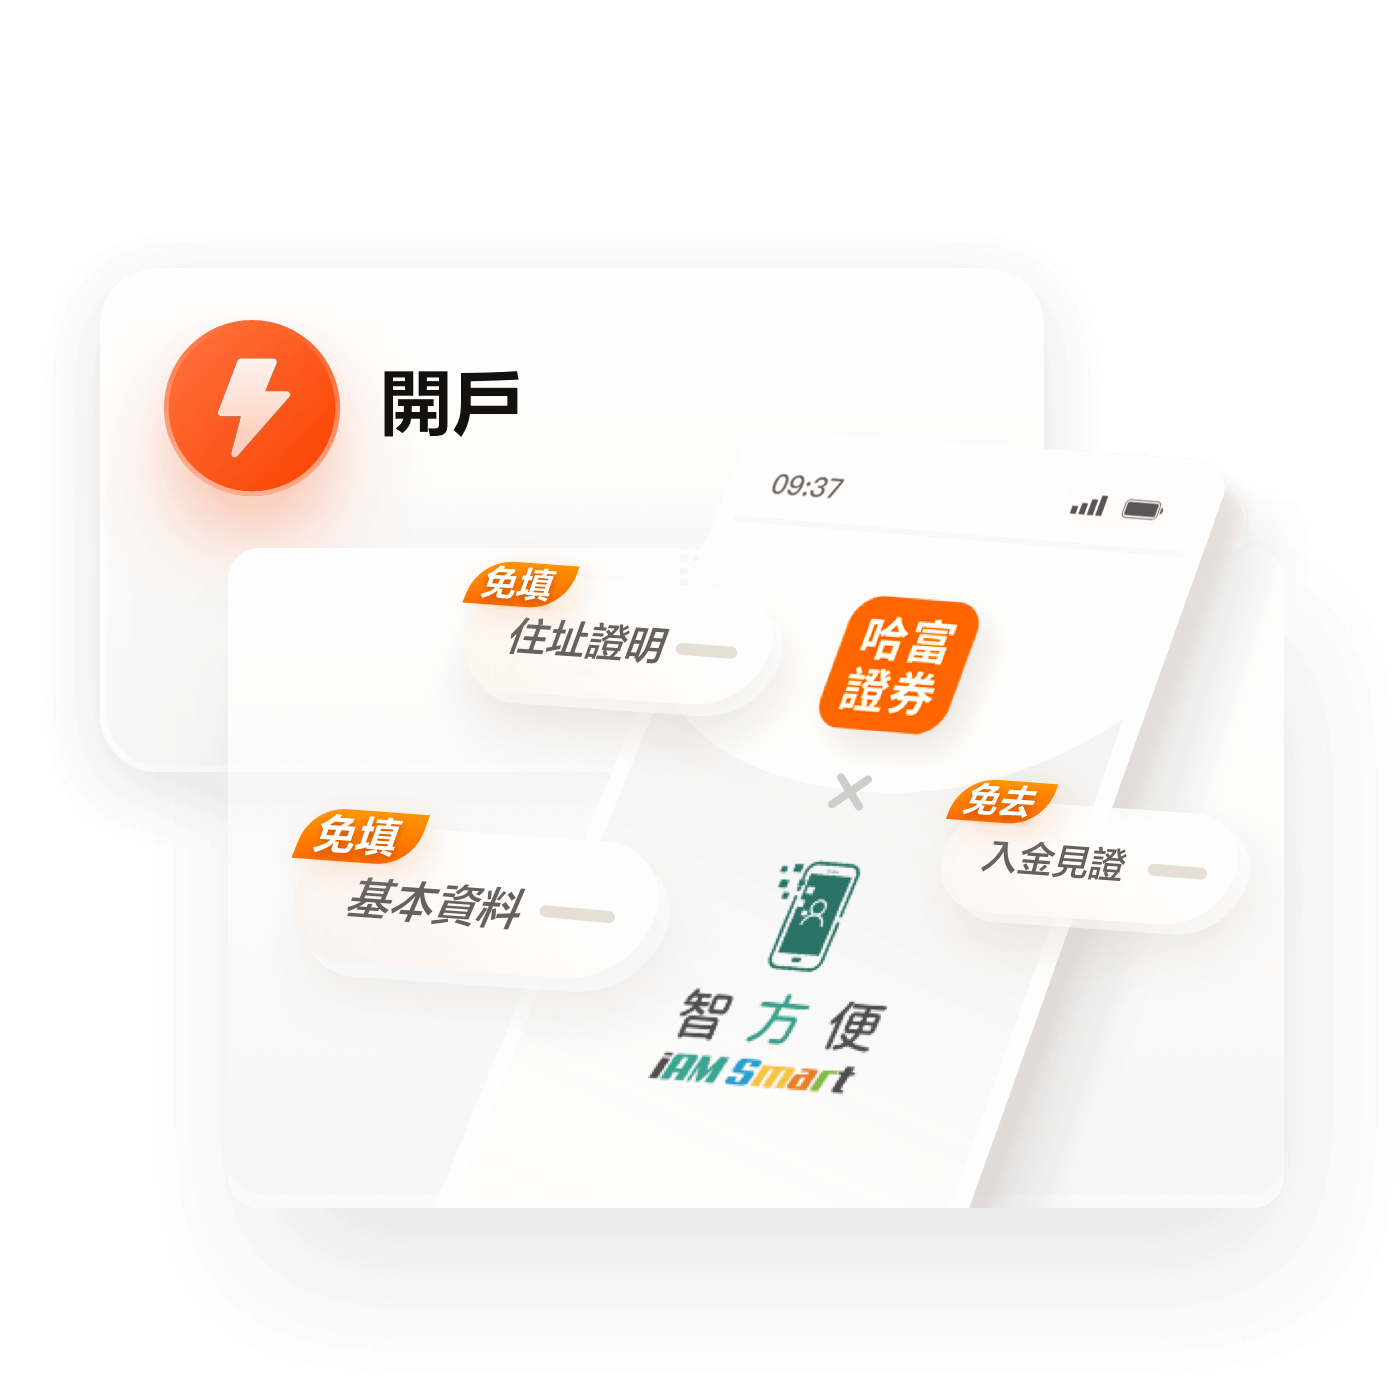 「智方便」由香港特區政府資訊科技總監辦公室開發及管理。用戶現可通過智方便於哈富證券App上完成港美股開戶認證程序。